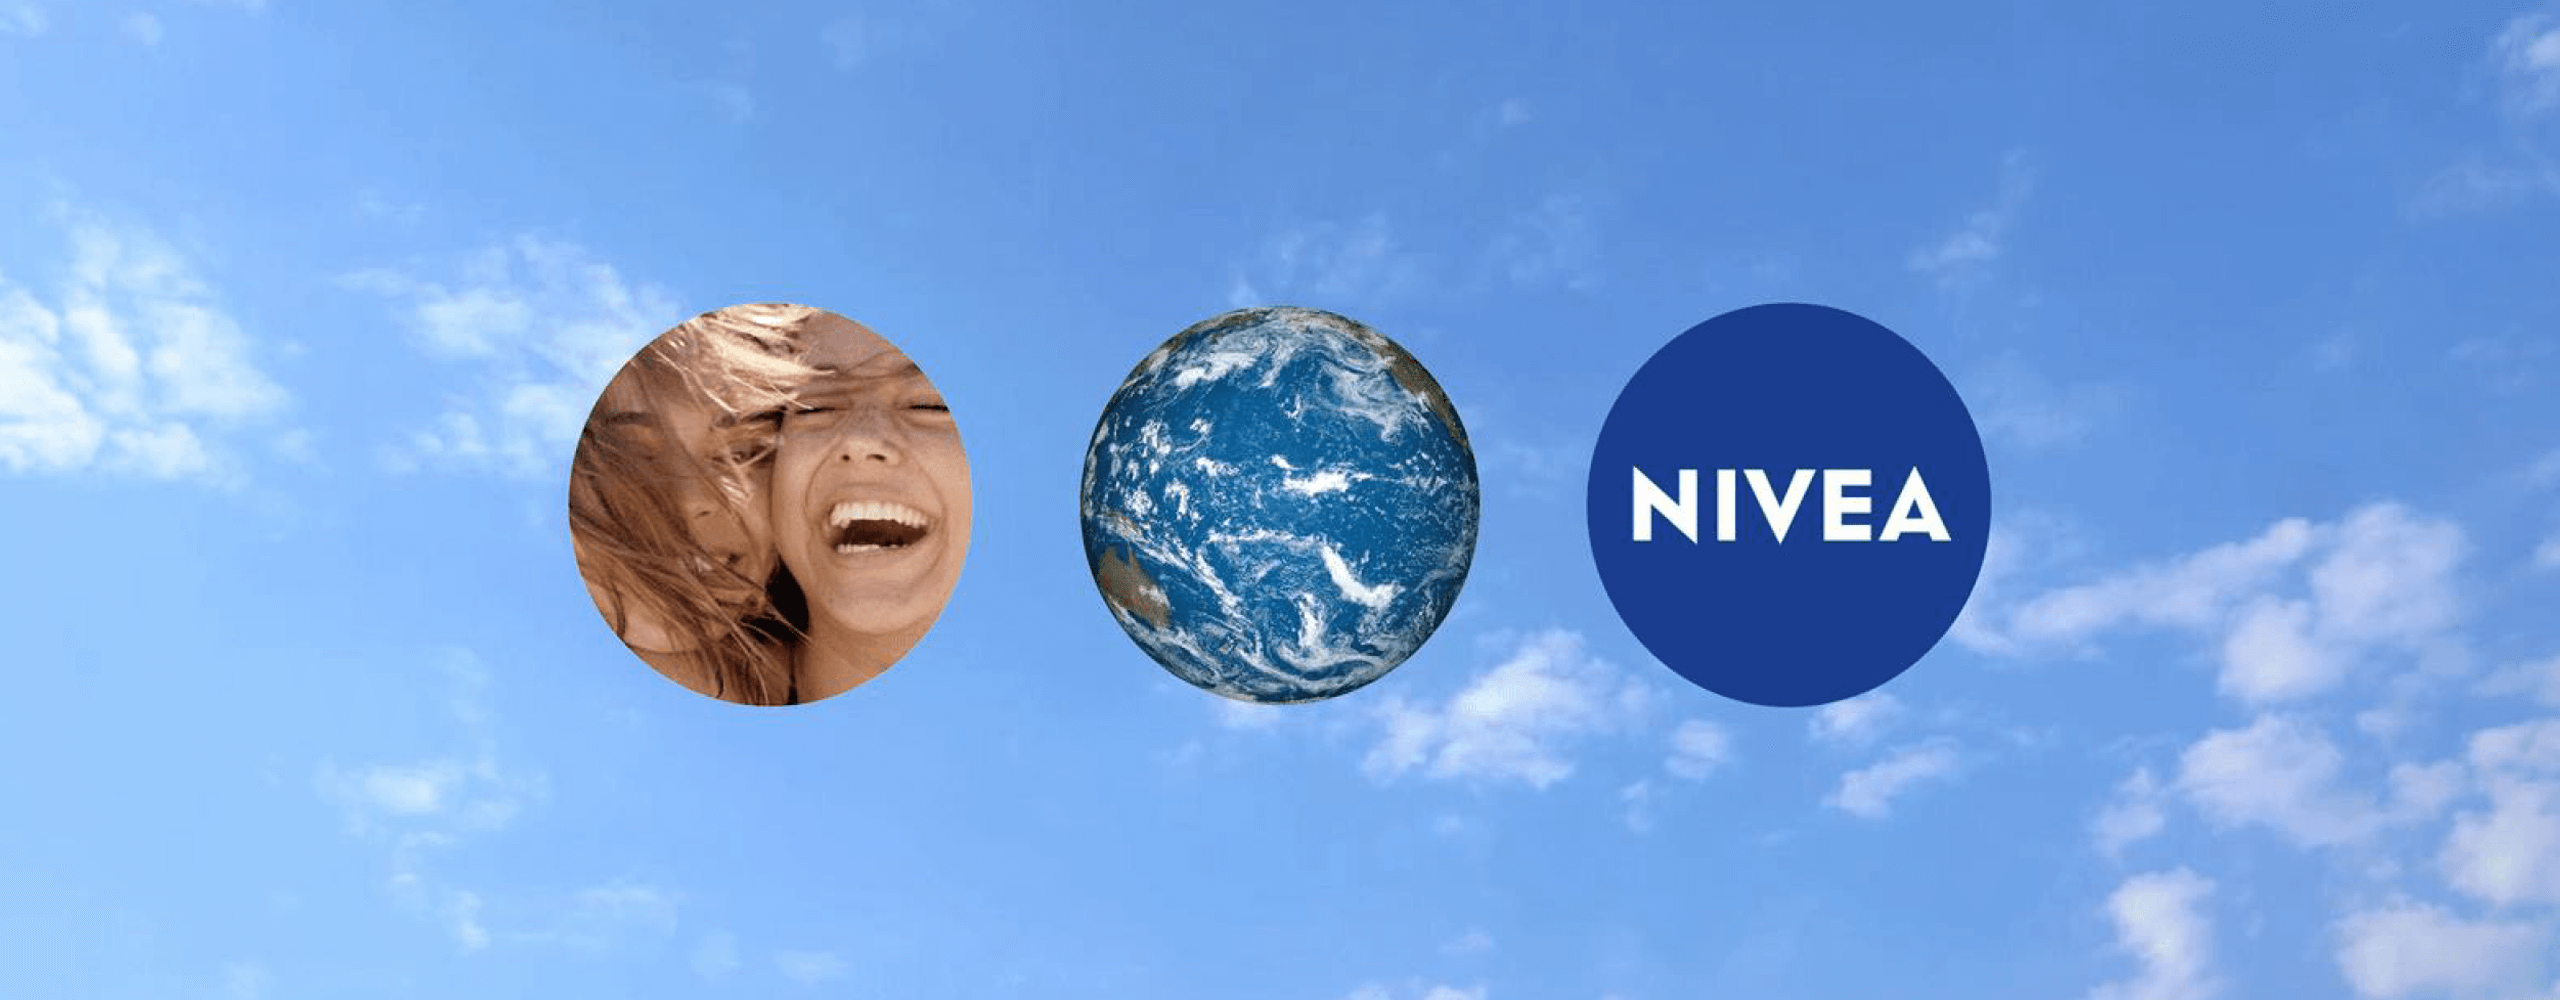 Logo de Nivea y símbolos de sustentabilidad